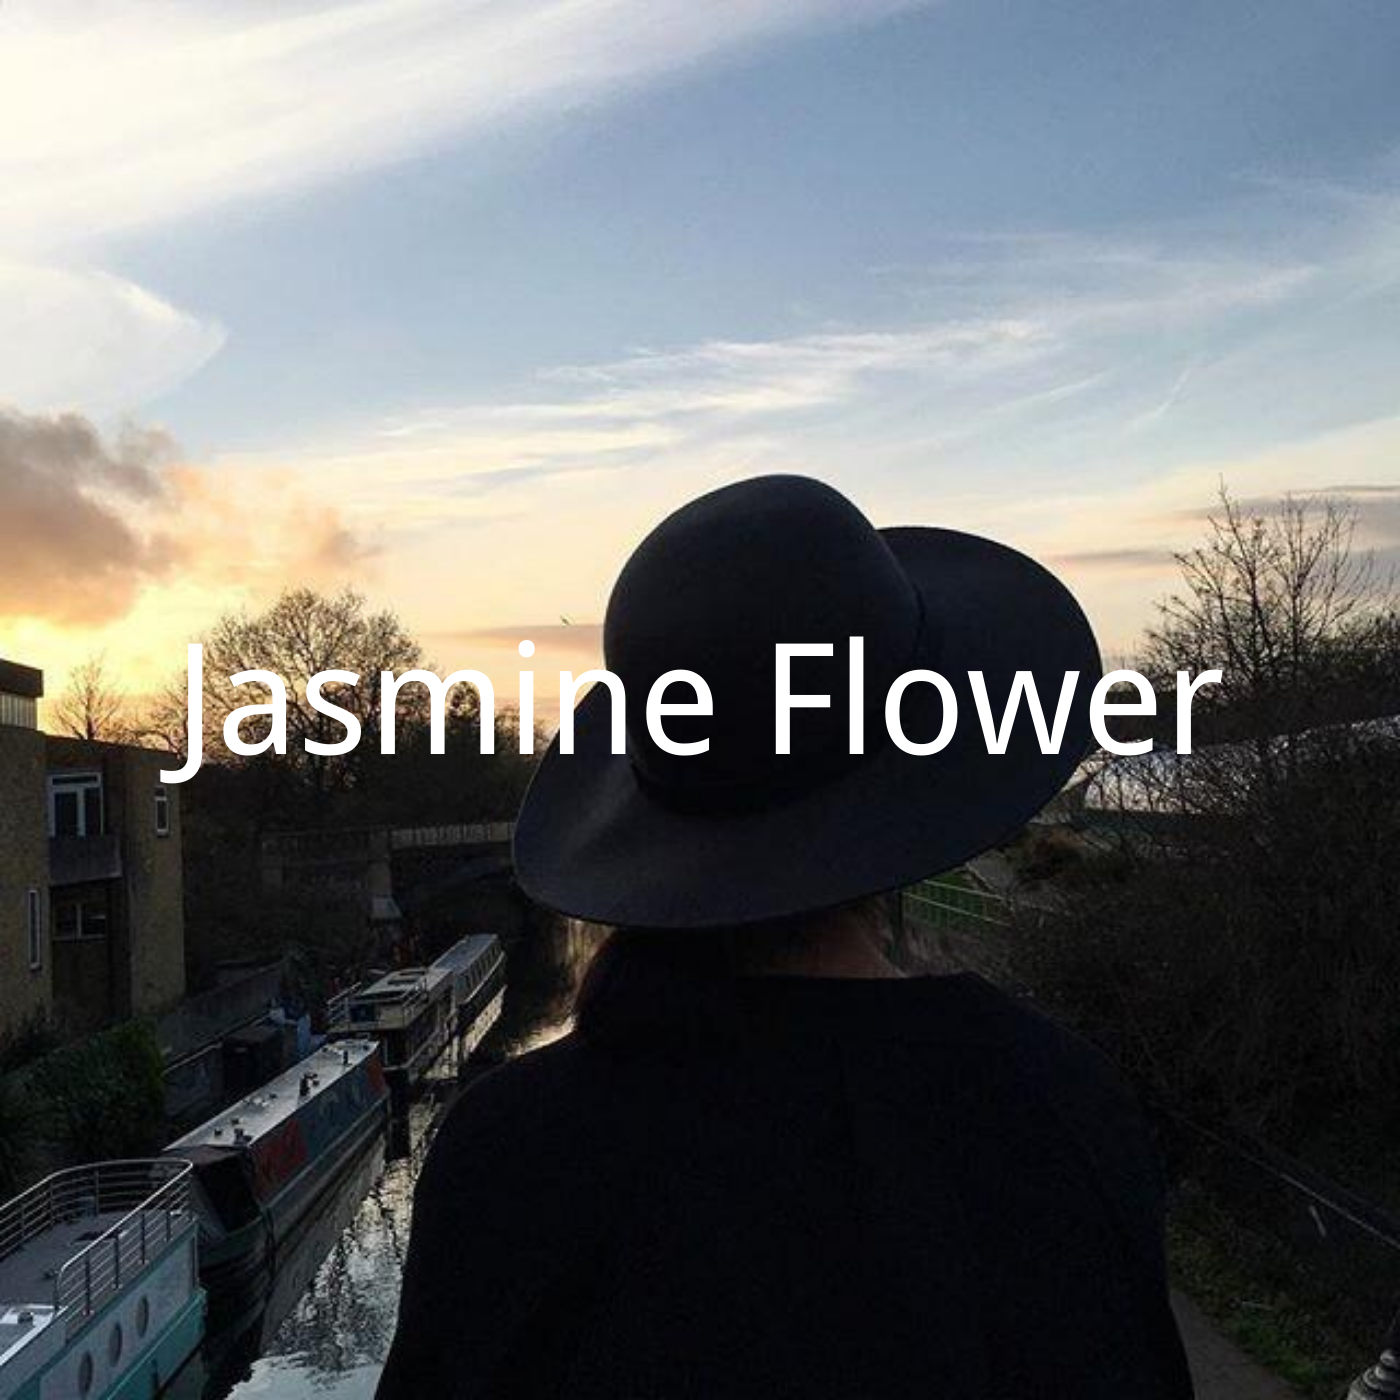 相思千山万水专辑:jasmine flower歌手:琳琅还没有歌词哦